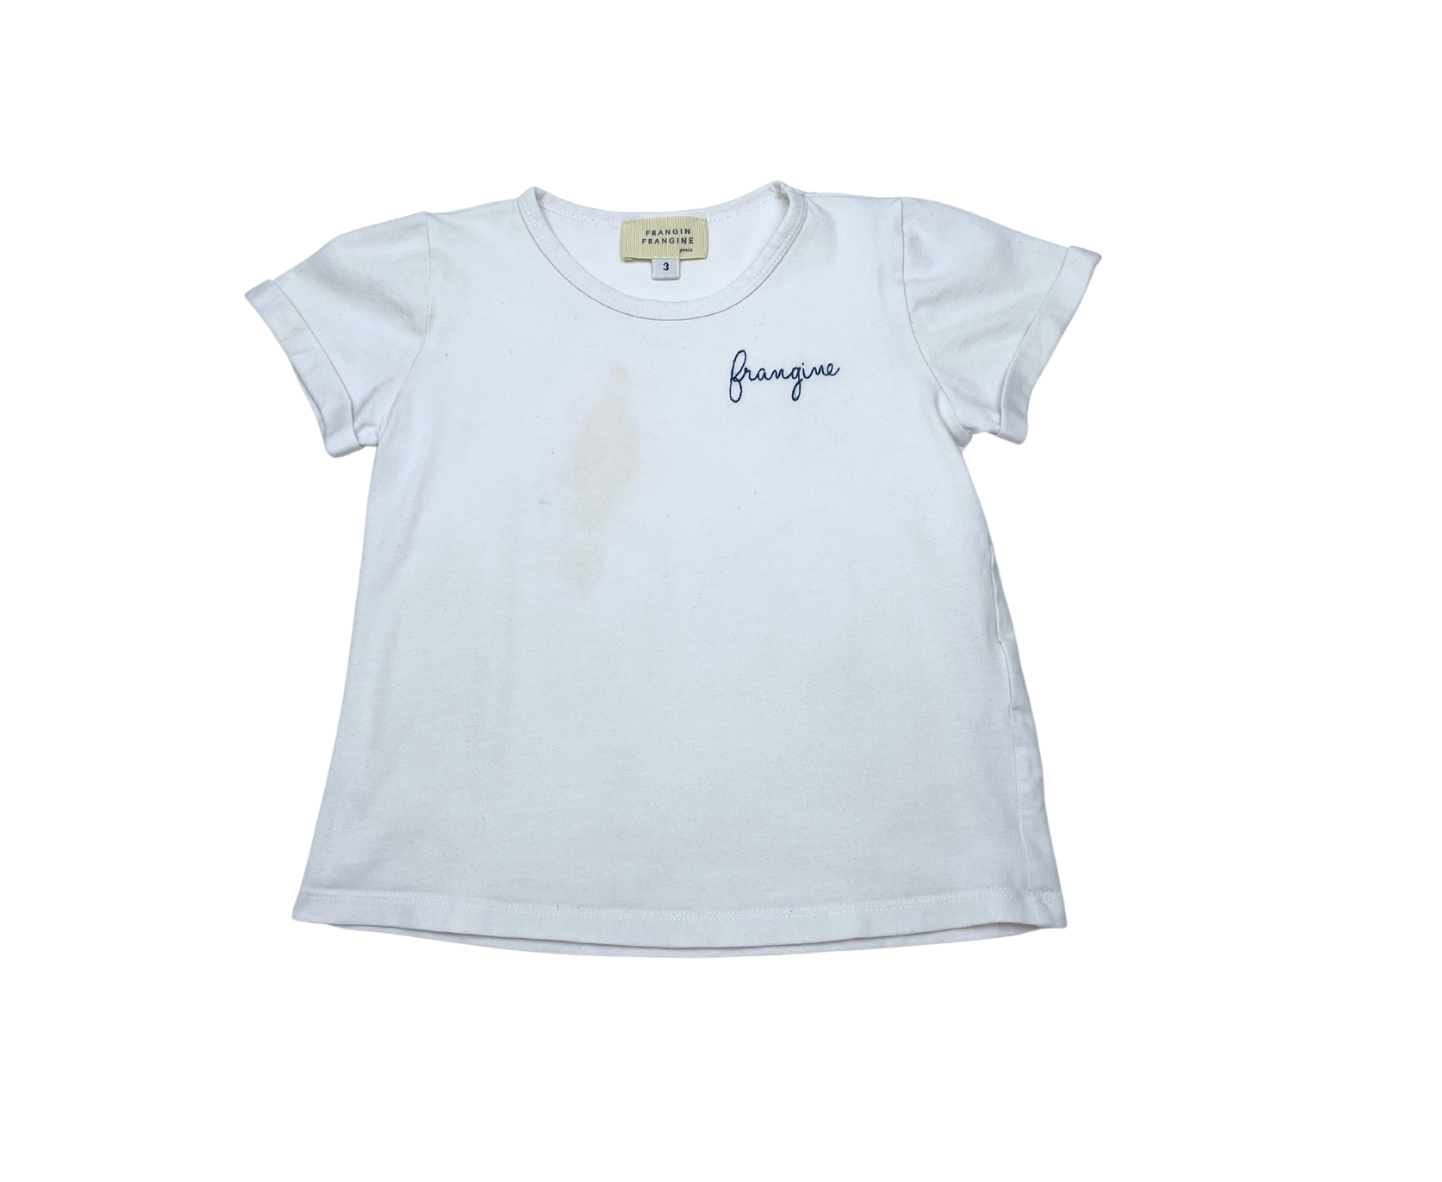 FRANGIN FRANGINE - T-shirt "frangine" - 3 ans